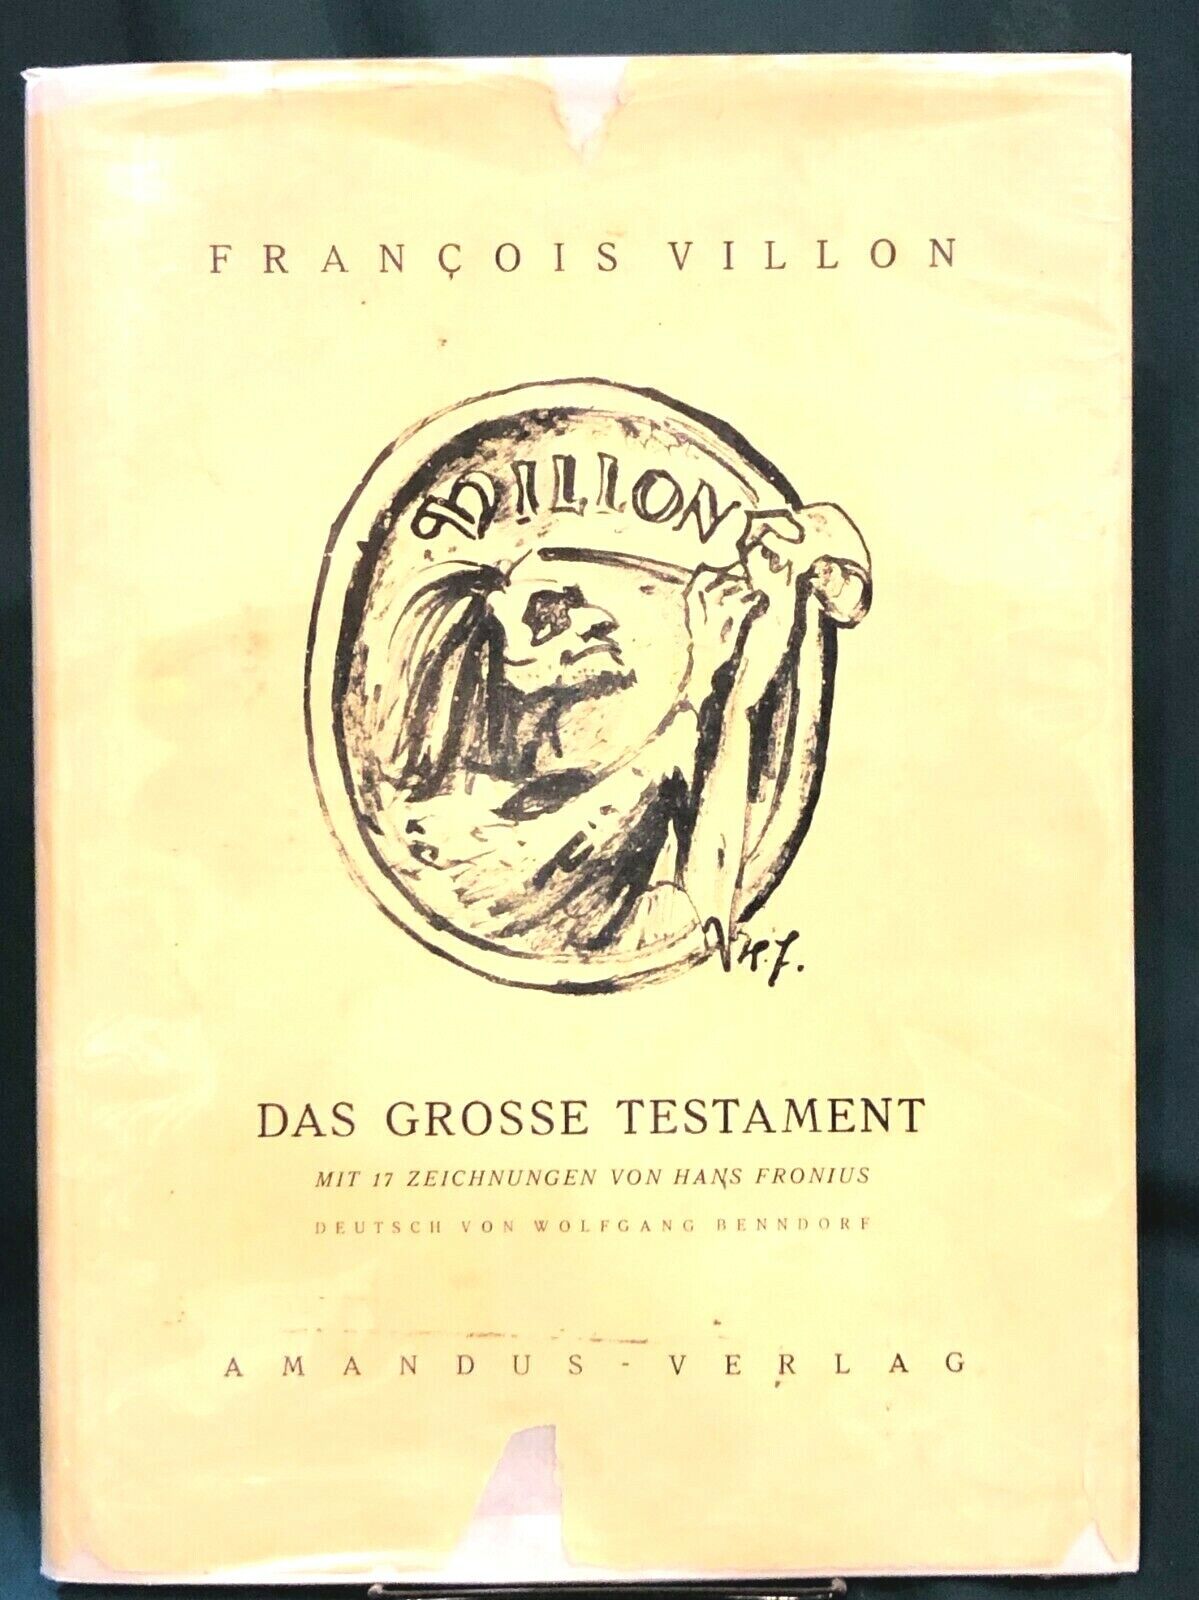 Francois Villon: Das Grosse Testament; Mit 17 Zeichnungen von Hans Fronius, 1949